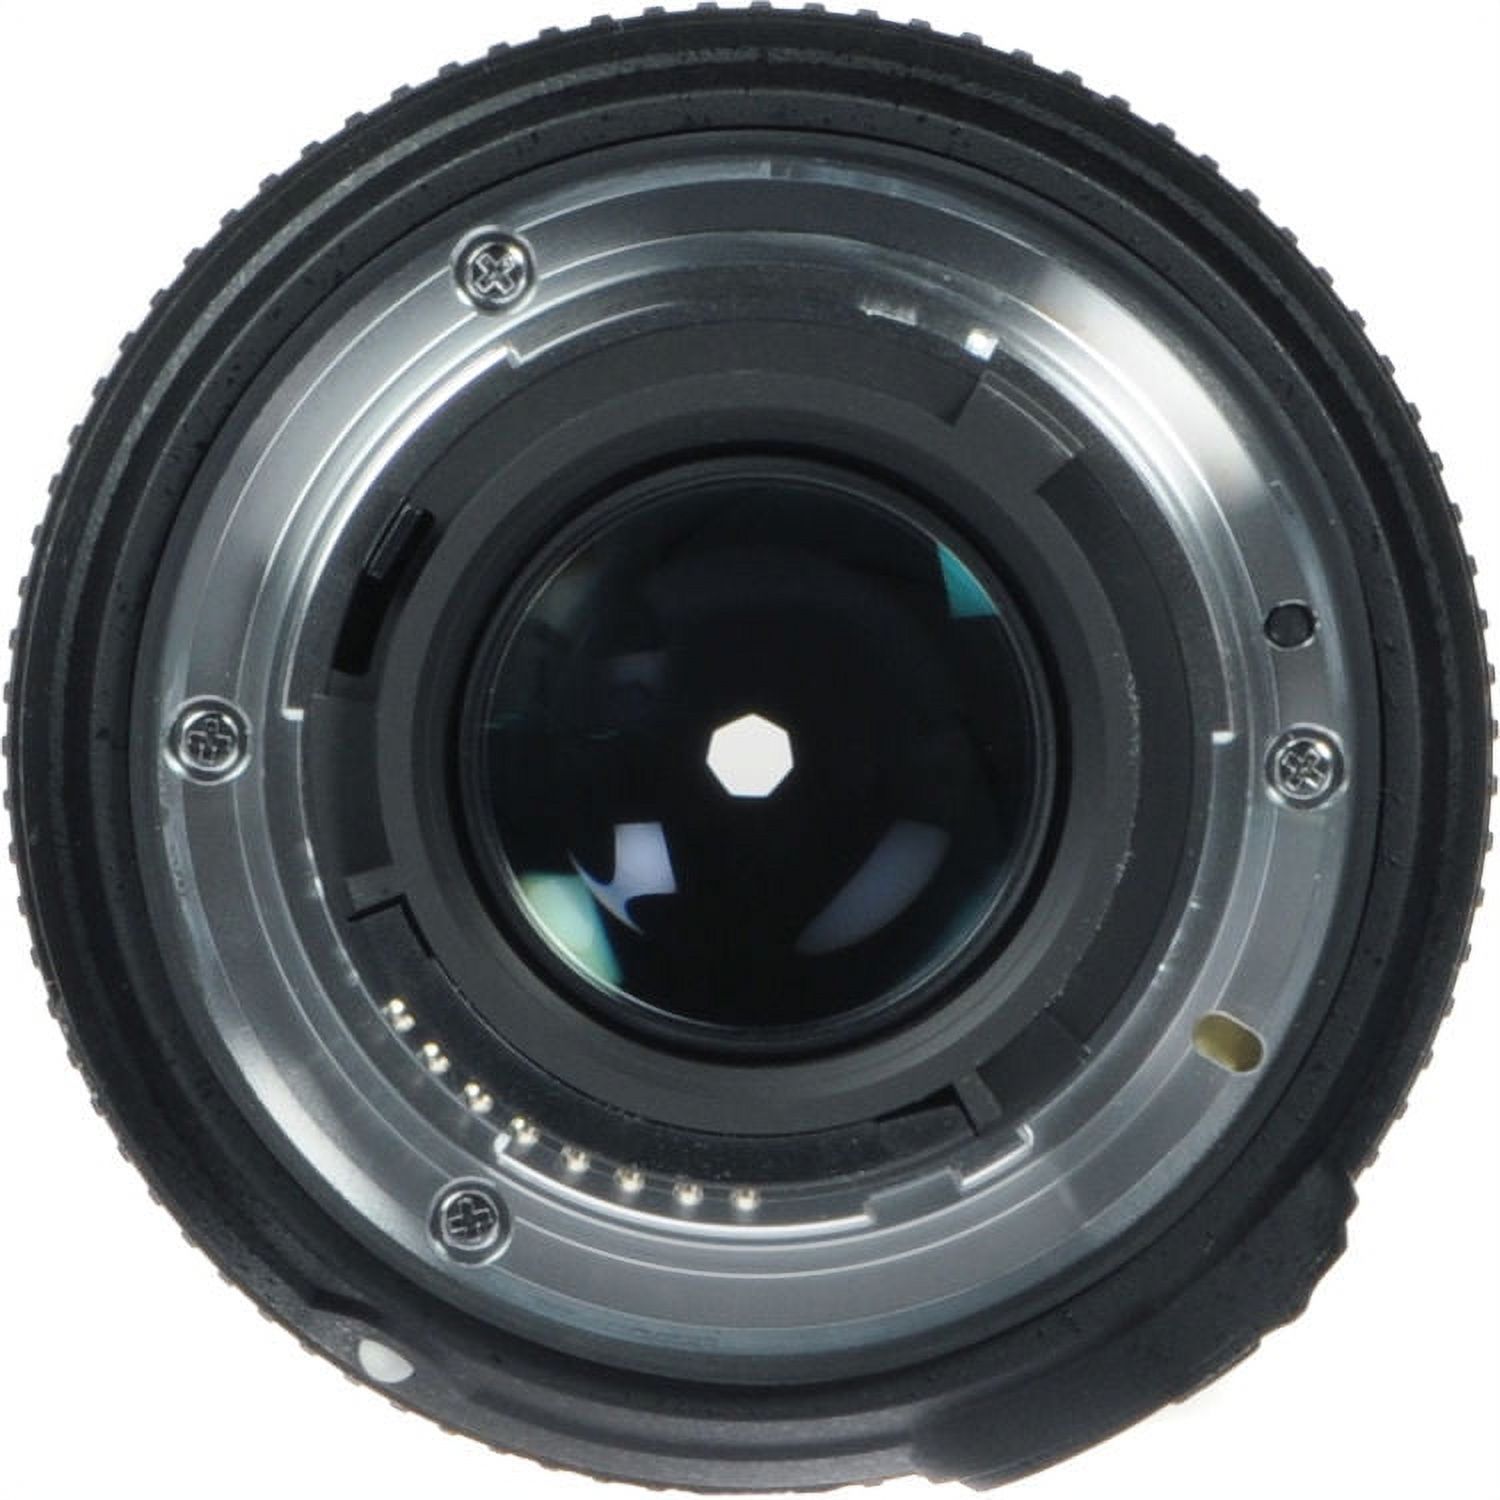 Nikon AF-S FX NIKKOR 50mm f/1.8G Lens with Auto Focus for Nikon DSLR Cameras - image 4 of 4